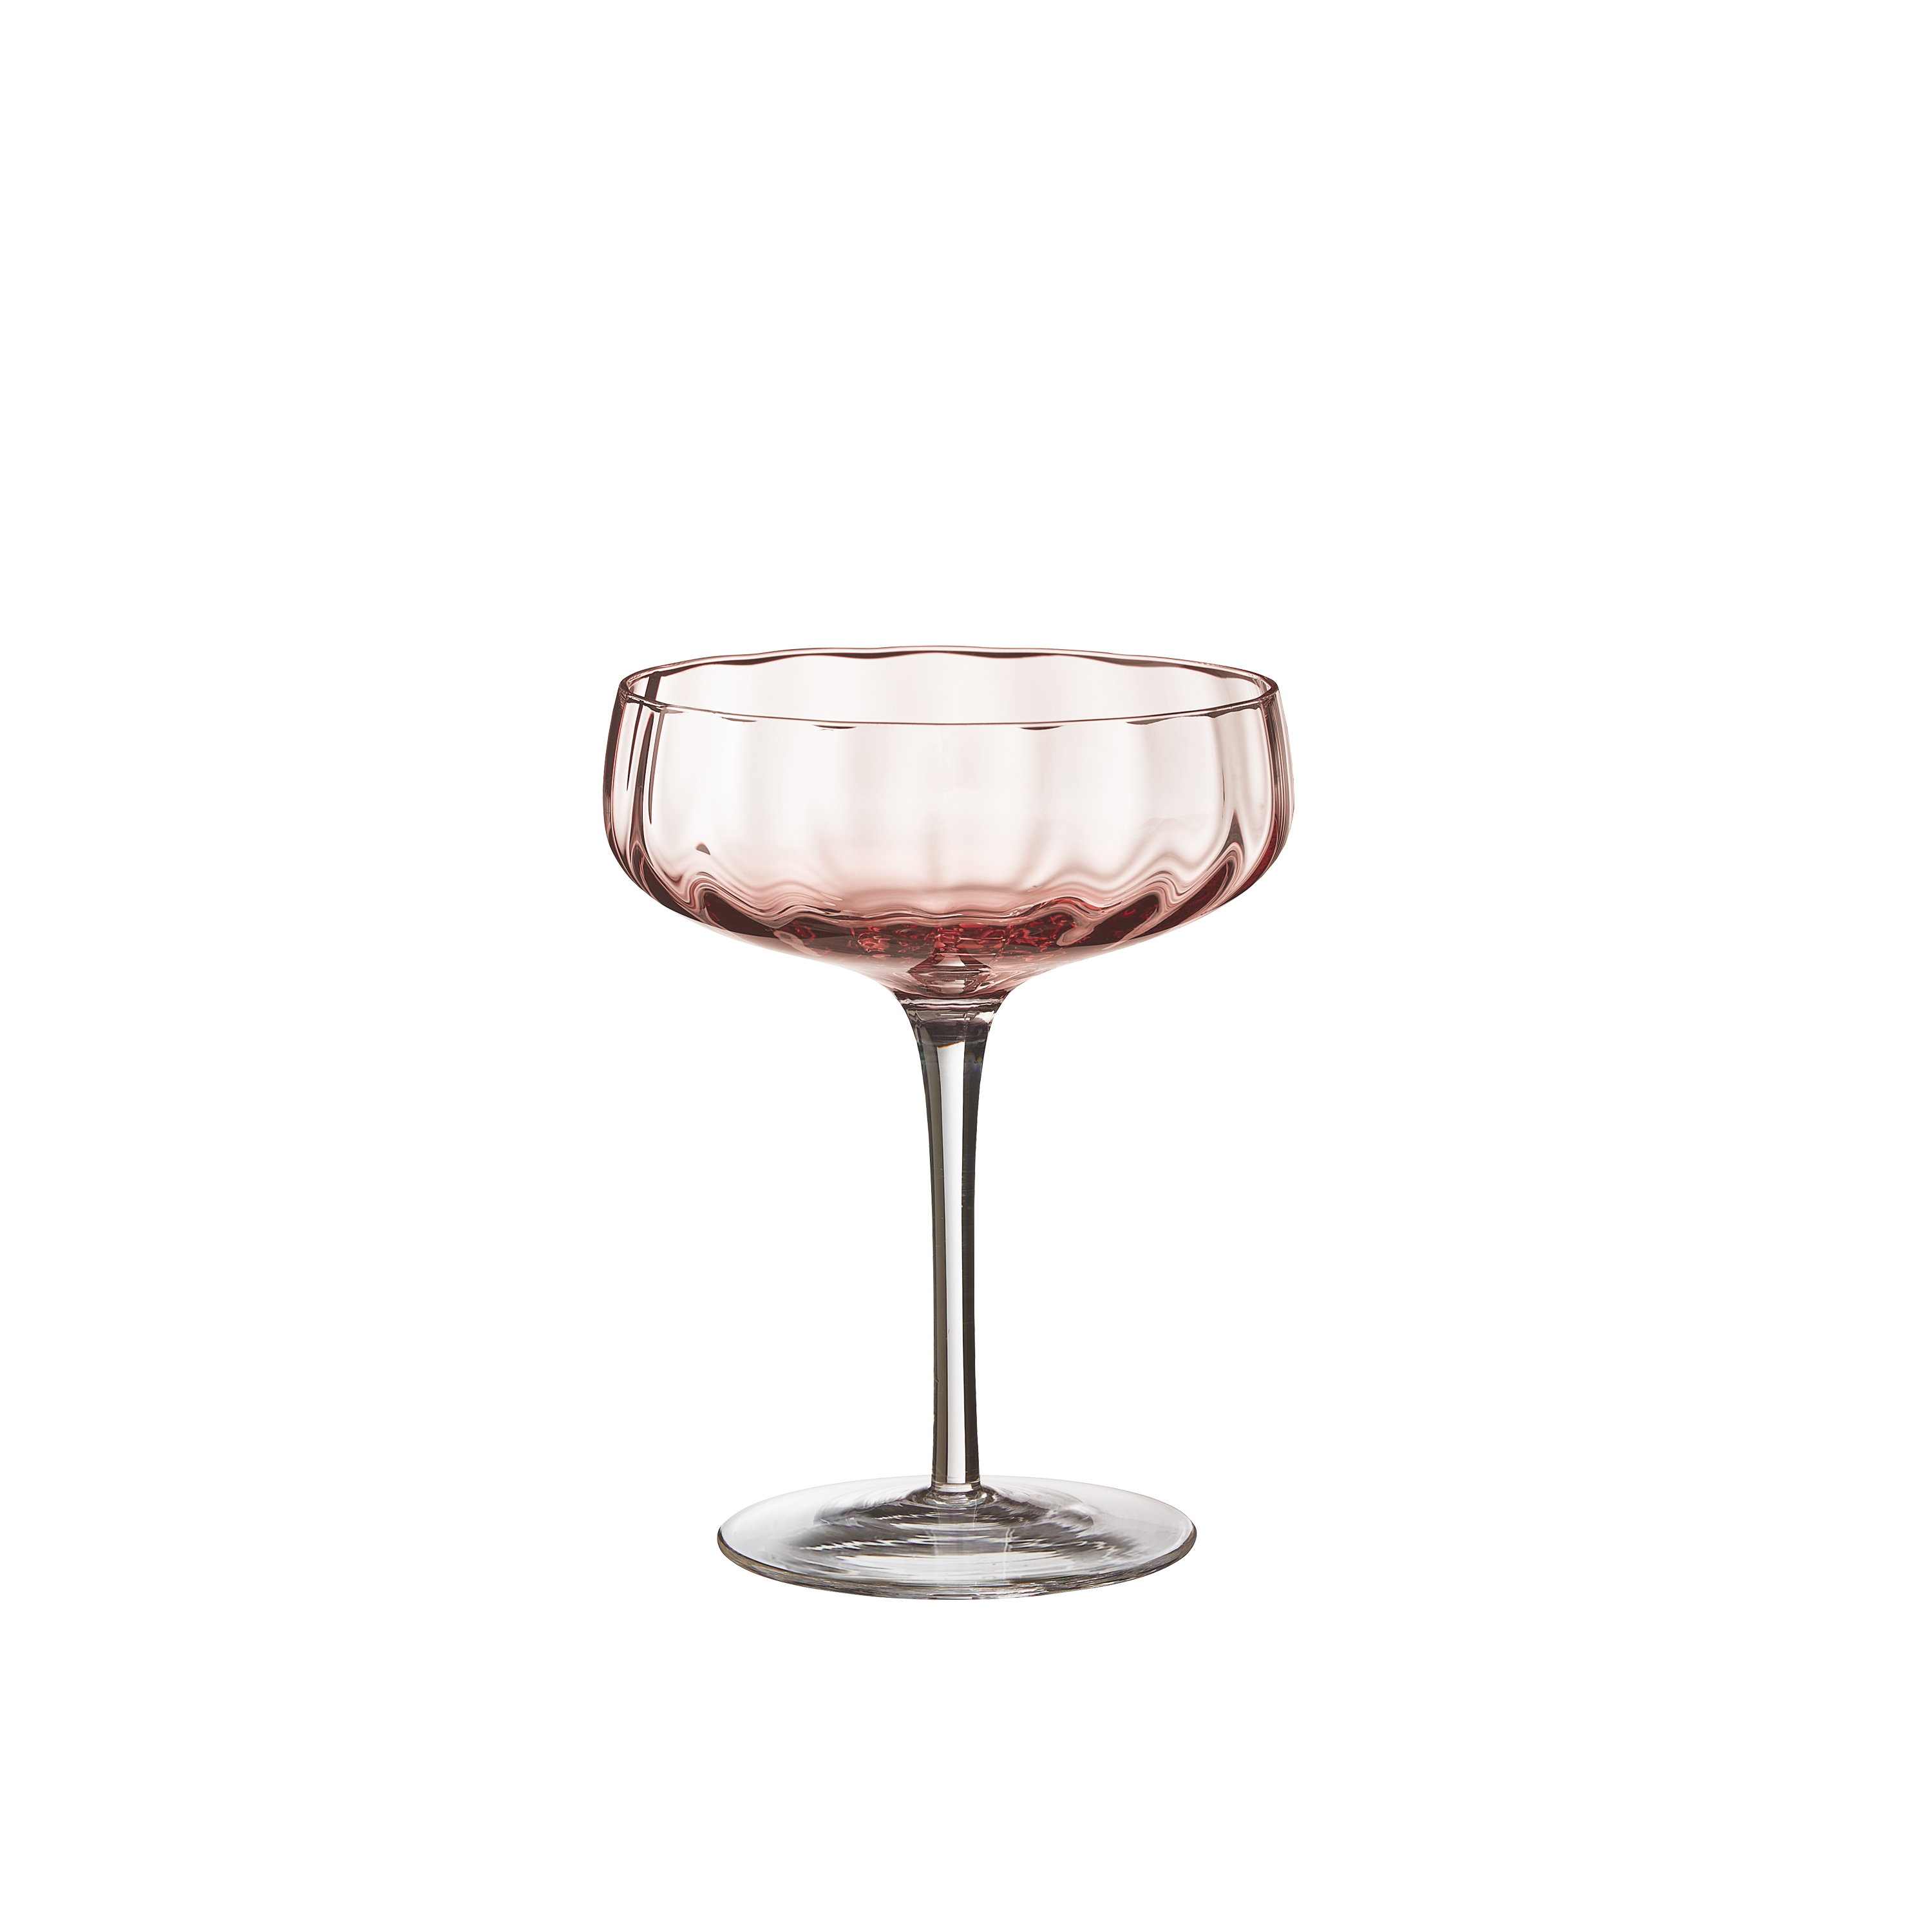 SØHOLM Sonja - champagne/cocktail glas 30 cl, fersken